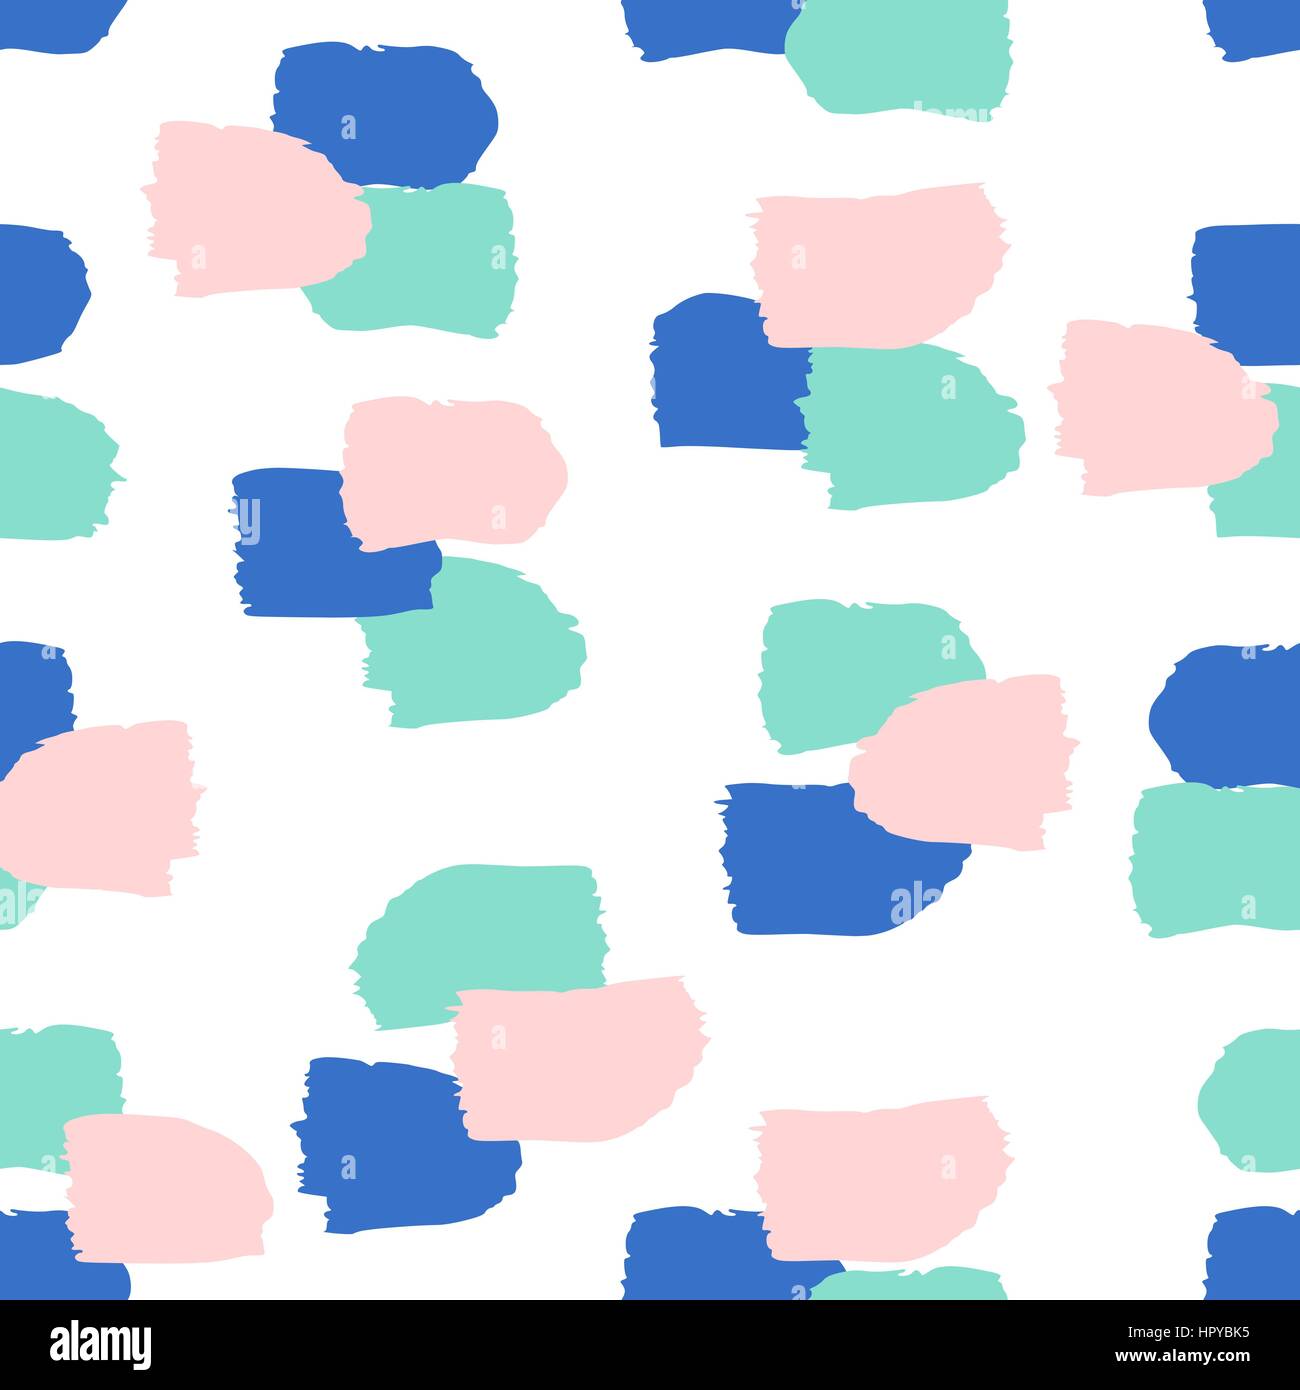 Nahtlose wiederholendes Muster mit Pinselstrichen in blau, türkis grün und Pastell rosa auf weißer Hintergrund. Retro-Stil Fliesen Hintergrund, Poster, tex Stock Vektor